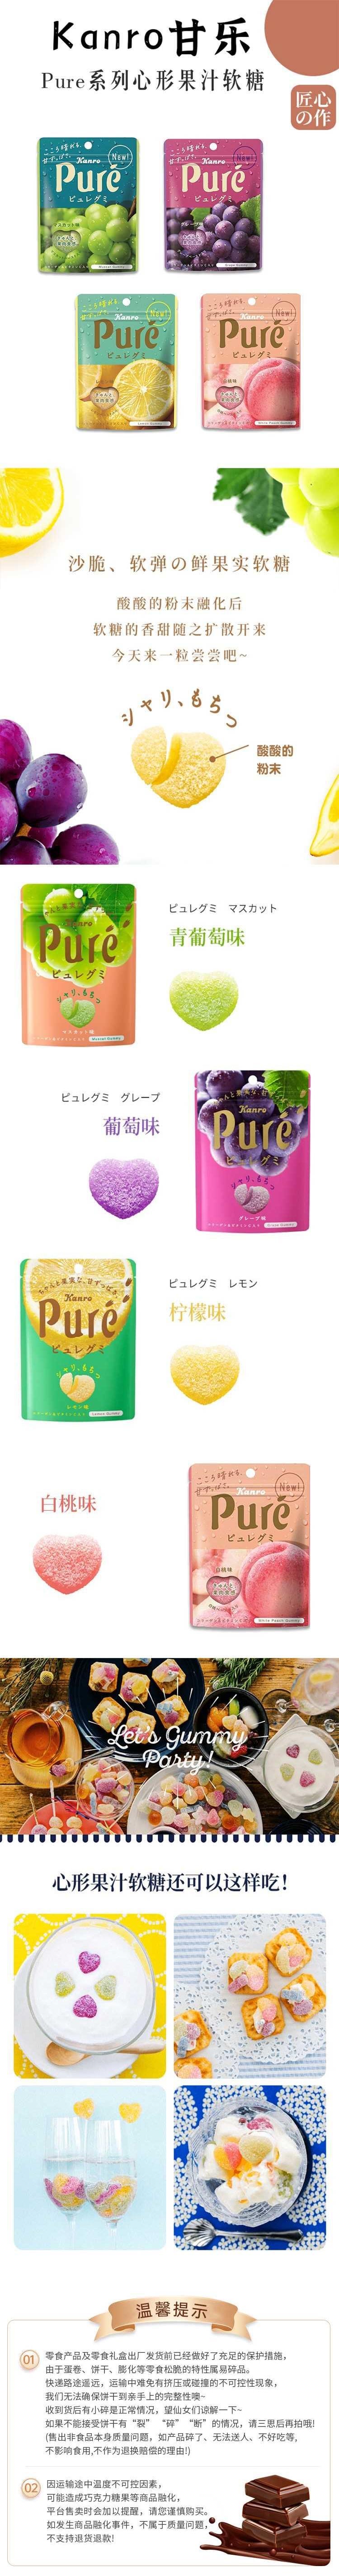 【日本直郵】KANRO甘樂 Pure果肉汁軟糖 56g 青提味